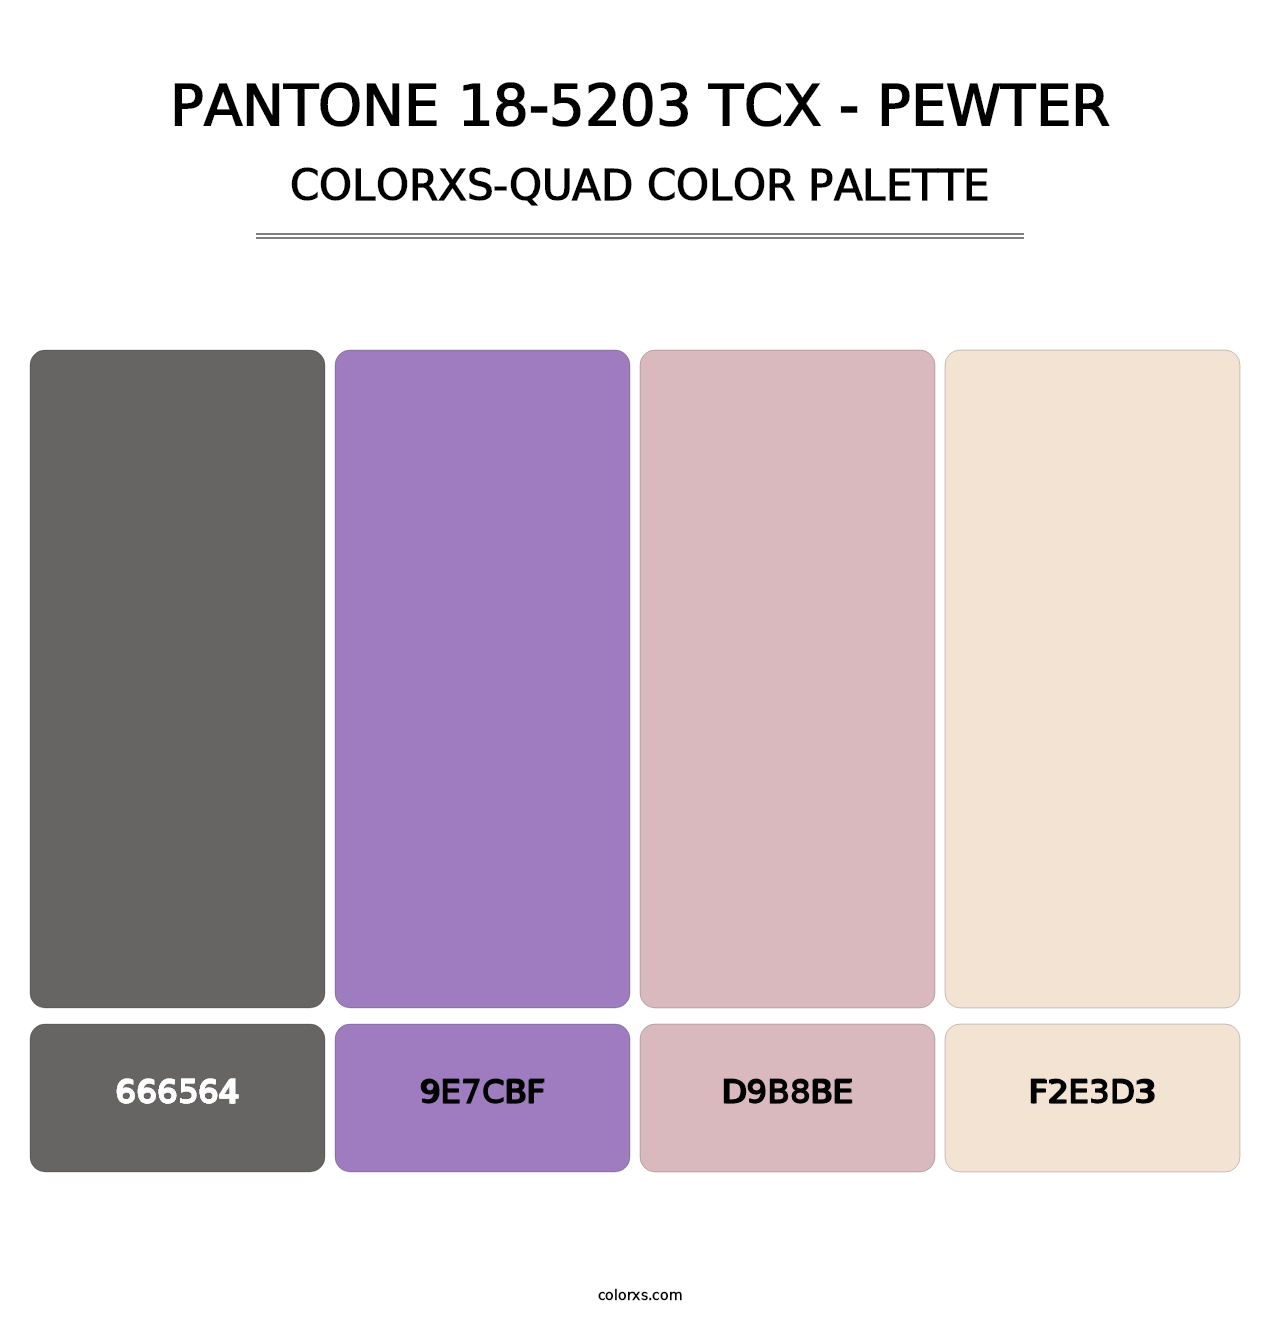 PANTONE 18-5203 TCX - Pewter - Colorxs Quad Palette